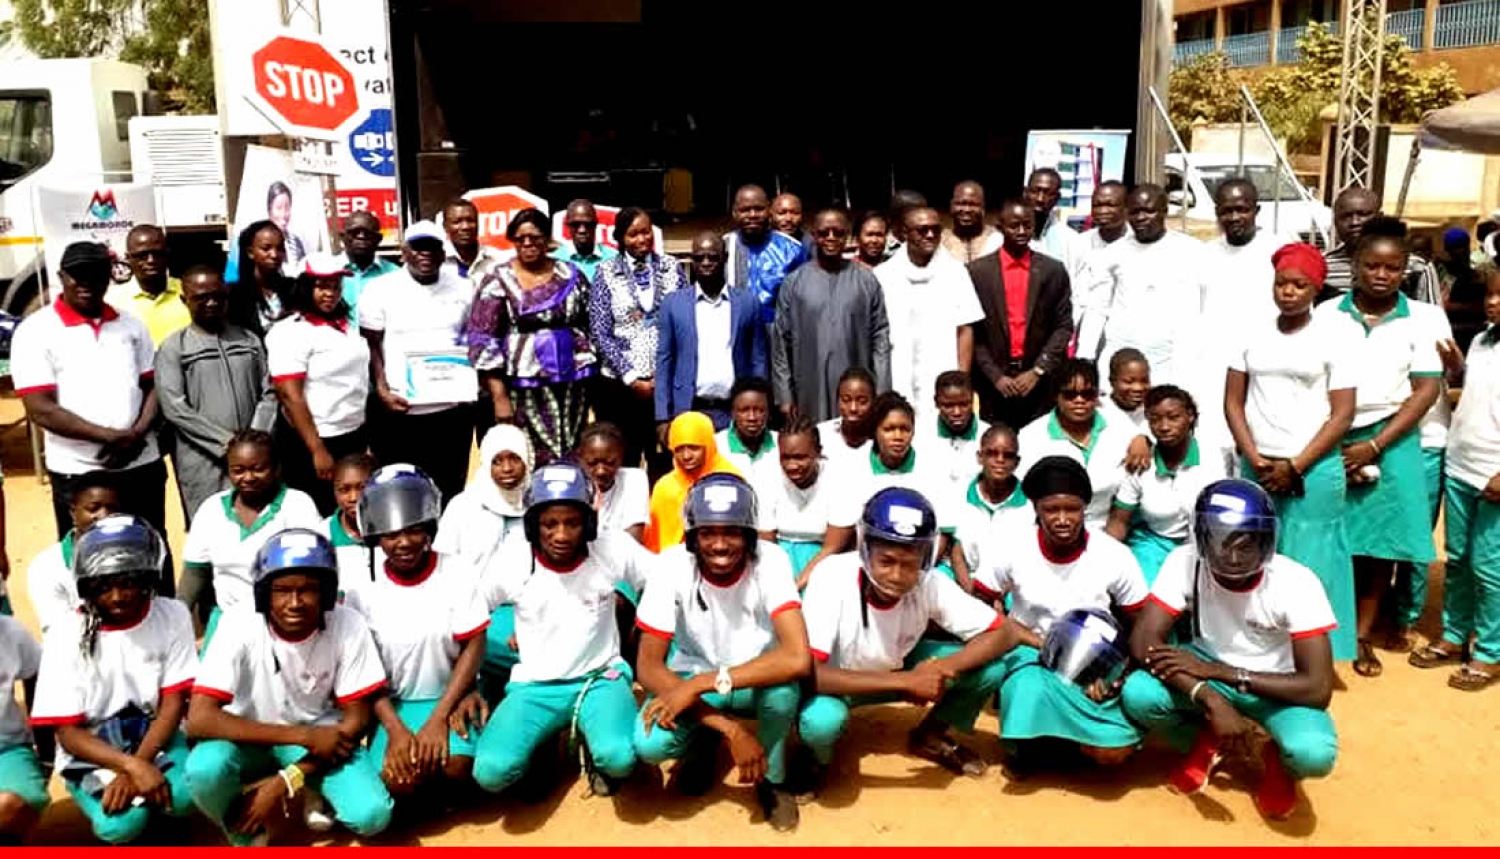 Jeune Chambre Internationale Ouagadougou, 5ème édition de la journée du port de casque